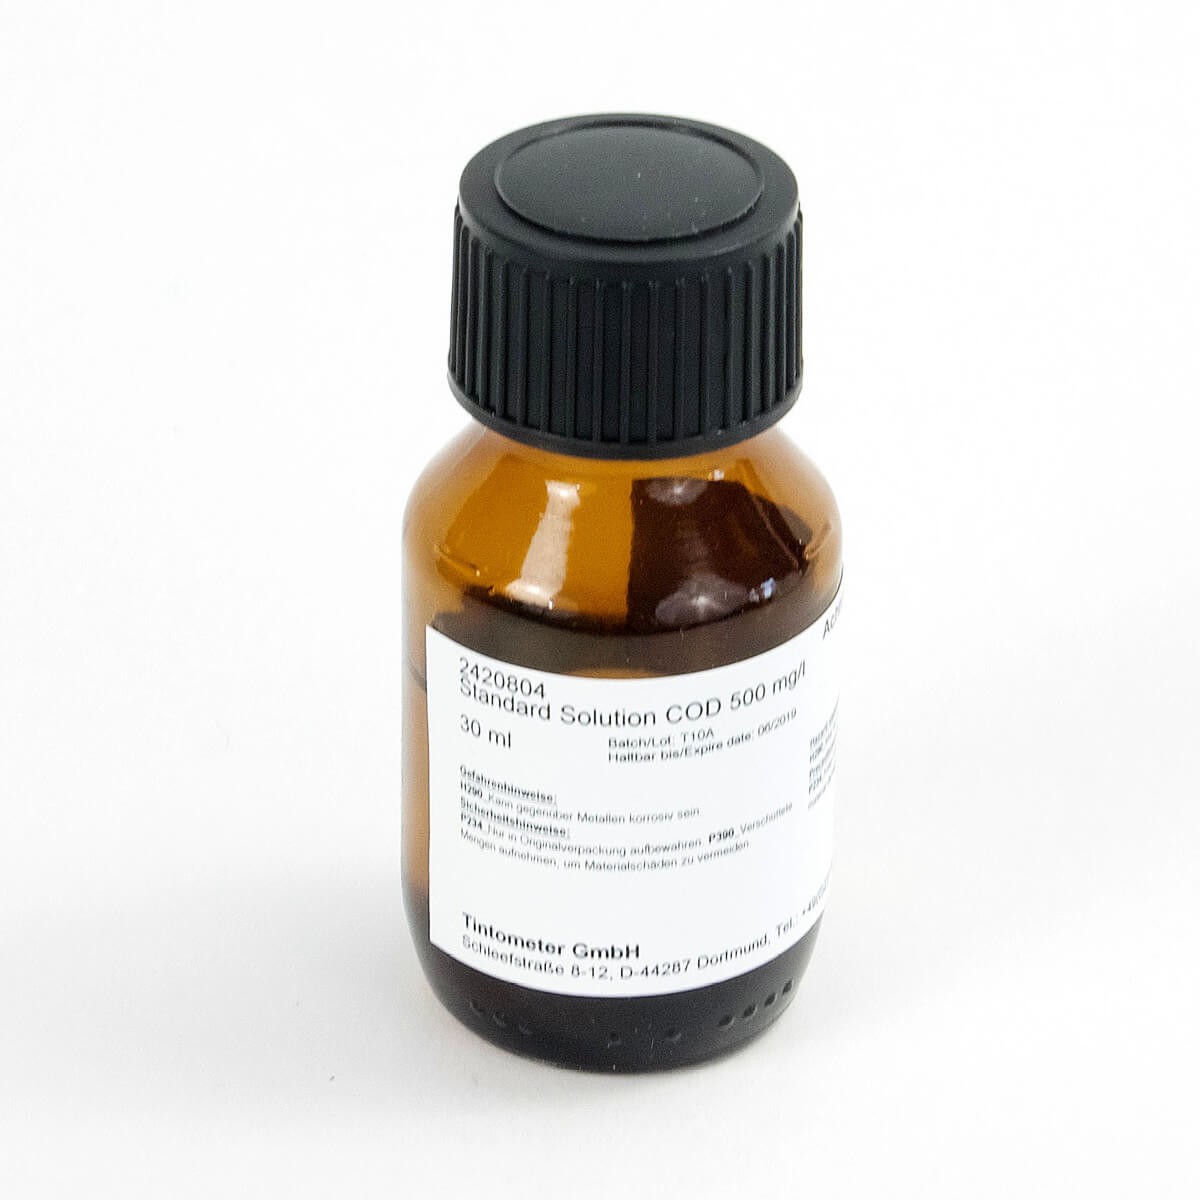 2420804 标准溶液 COD 500 mg/l